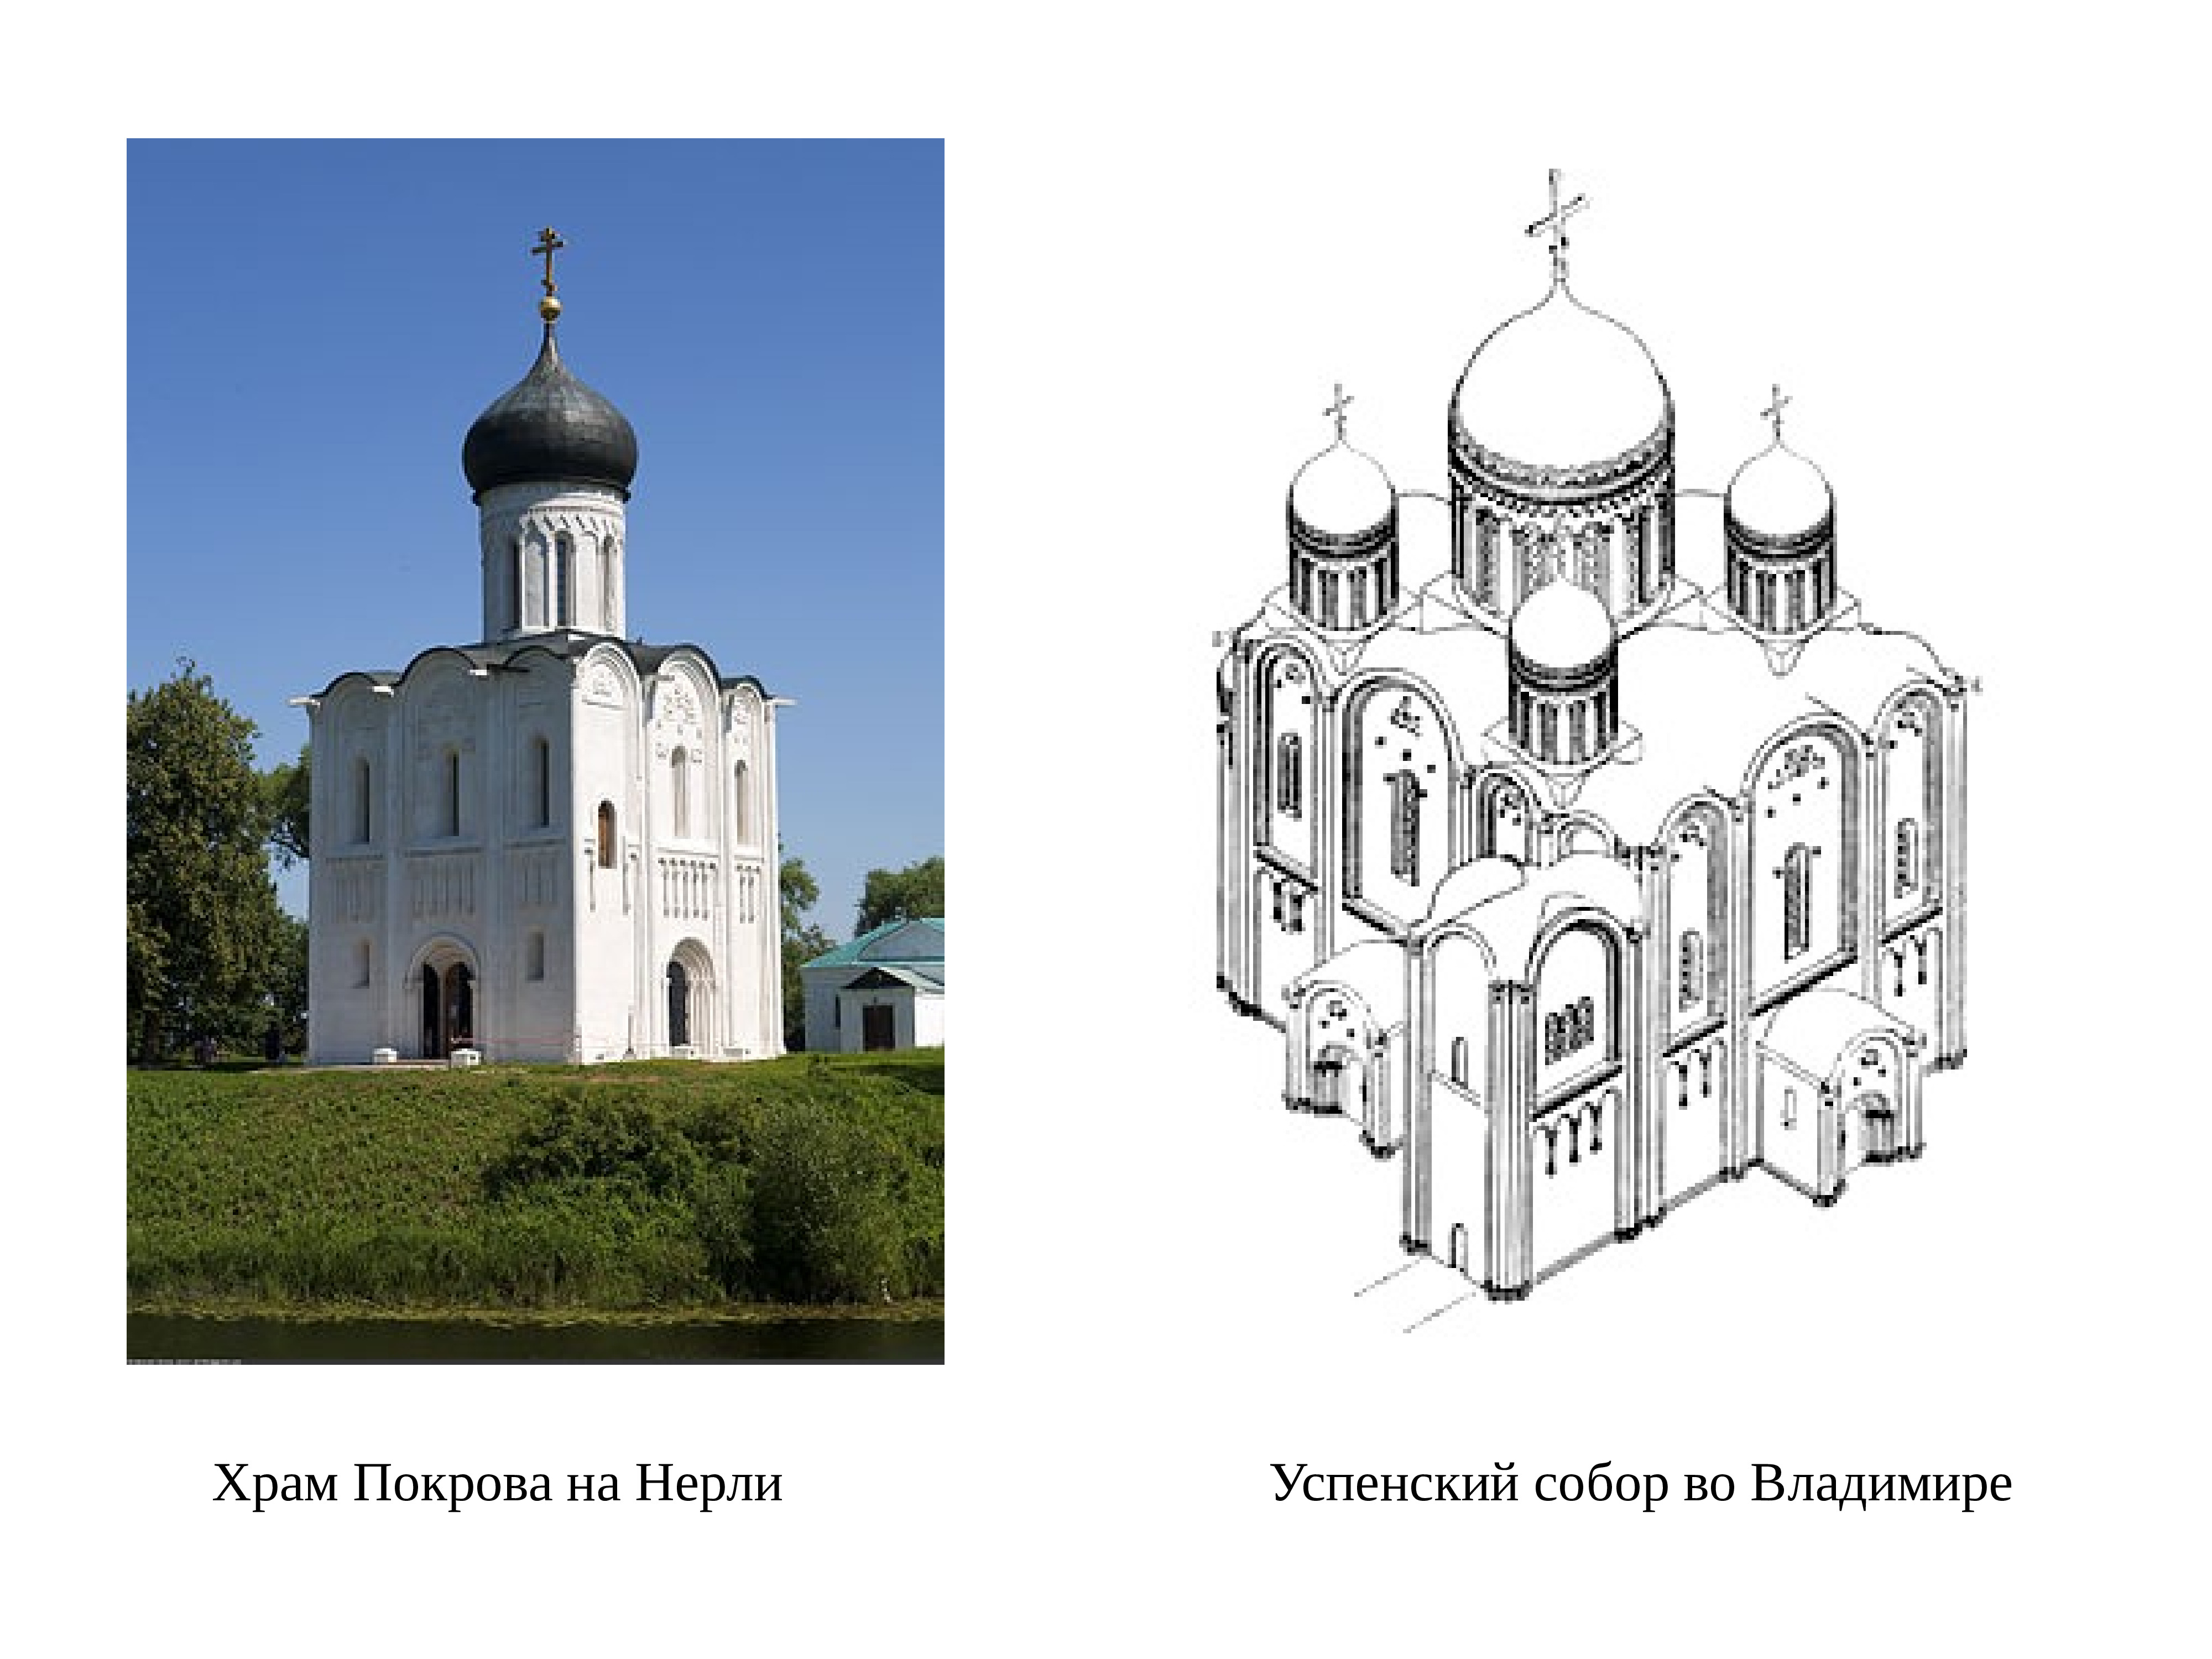 Новгородские храмы периода раздробленности